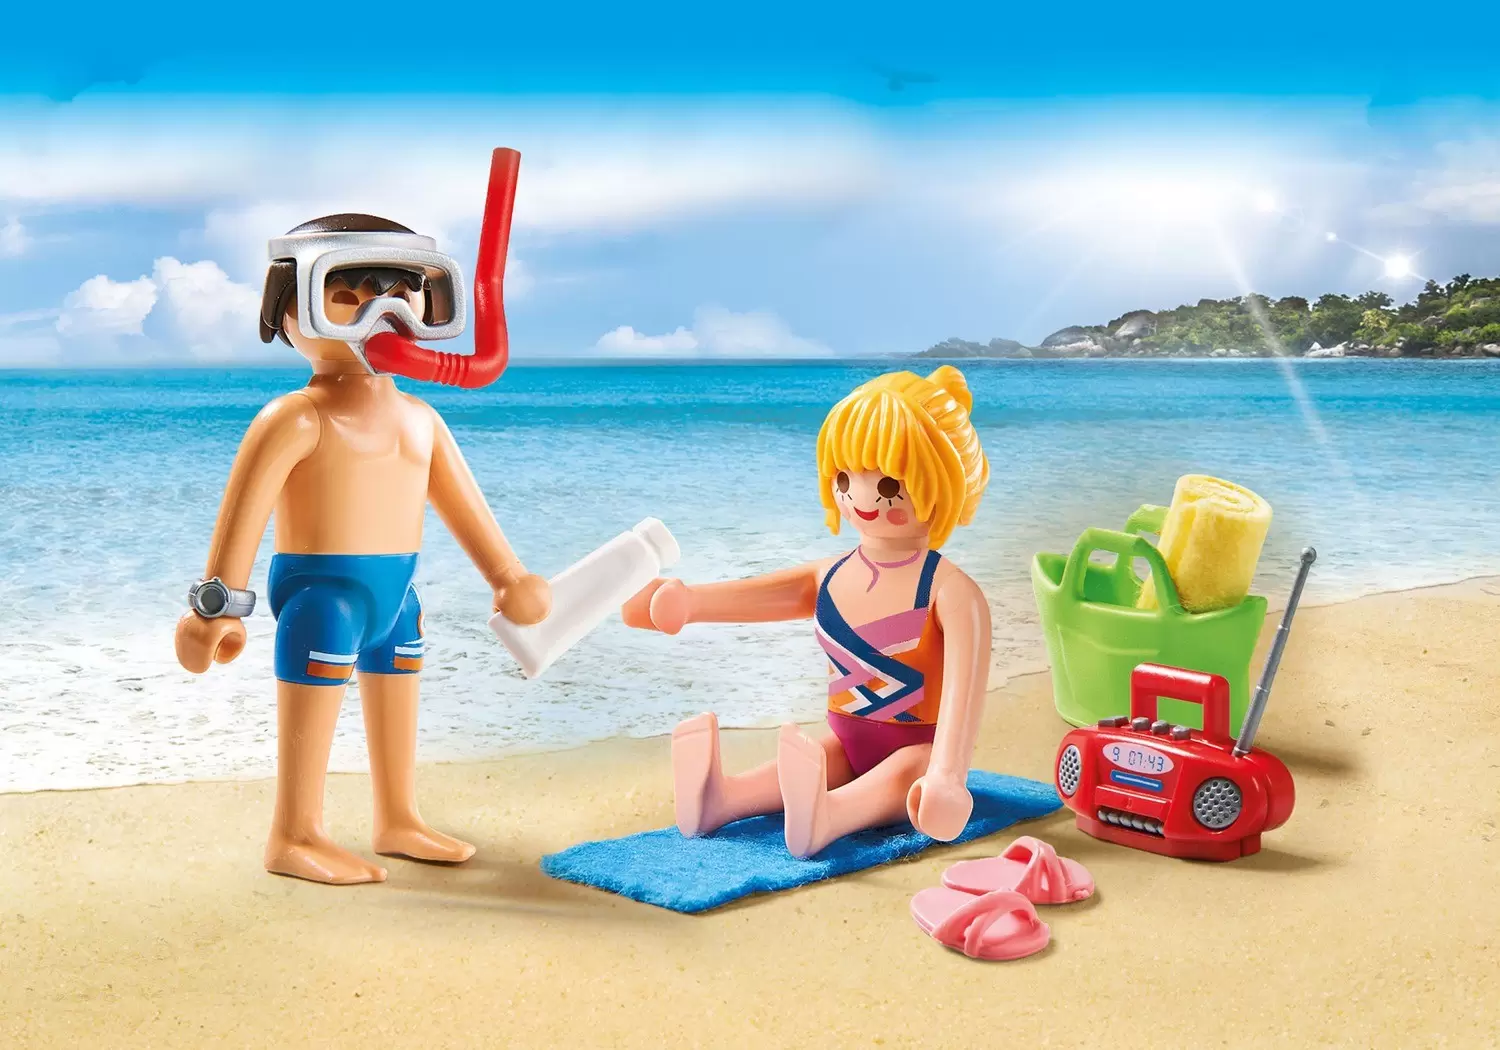 Playmobil on Hollidays - Beachgoers